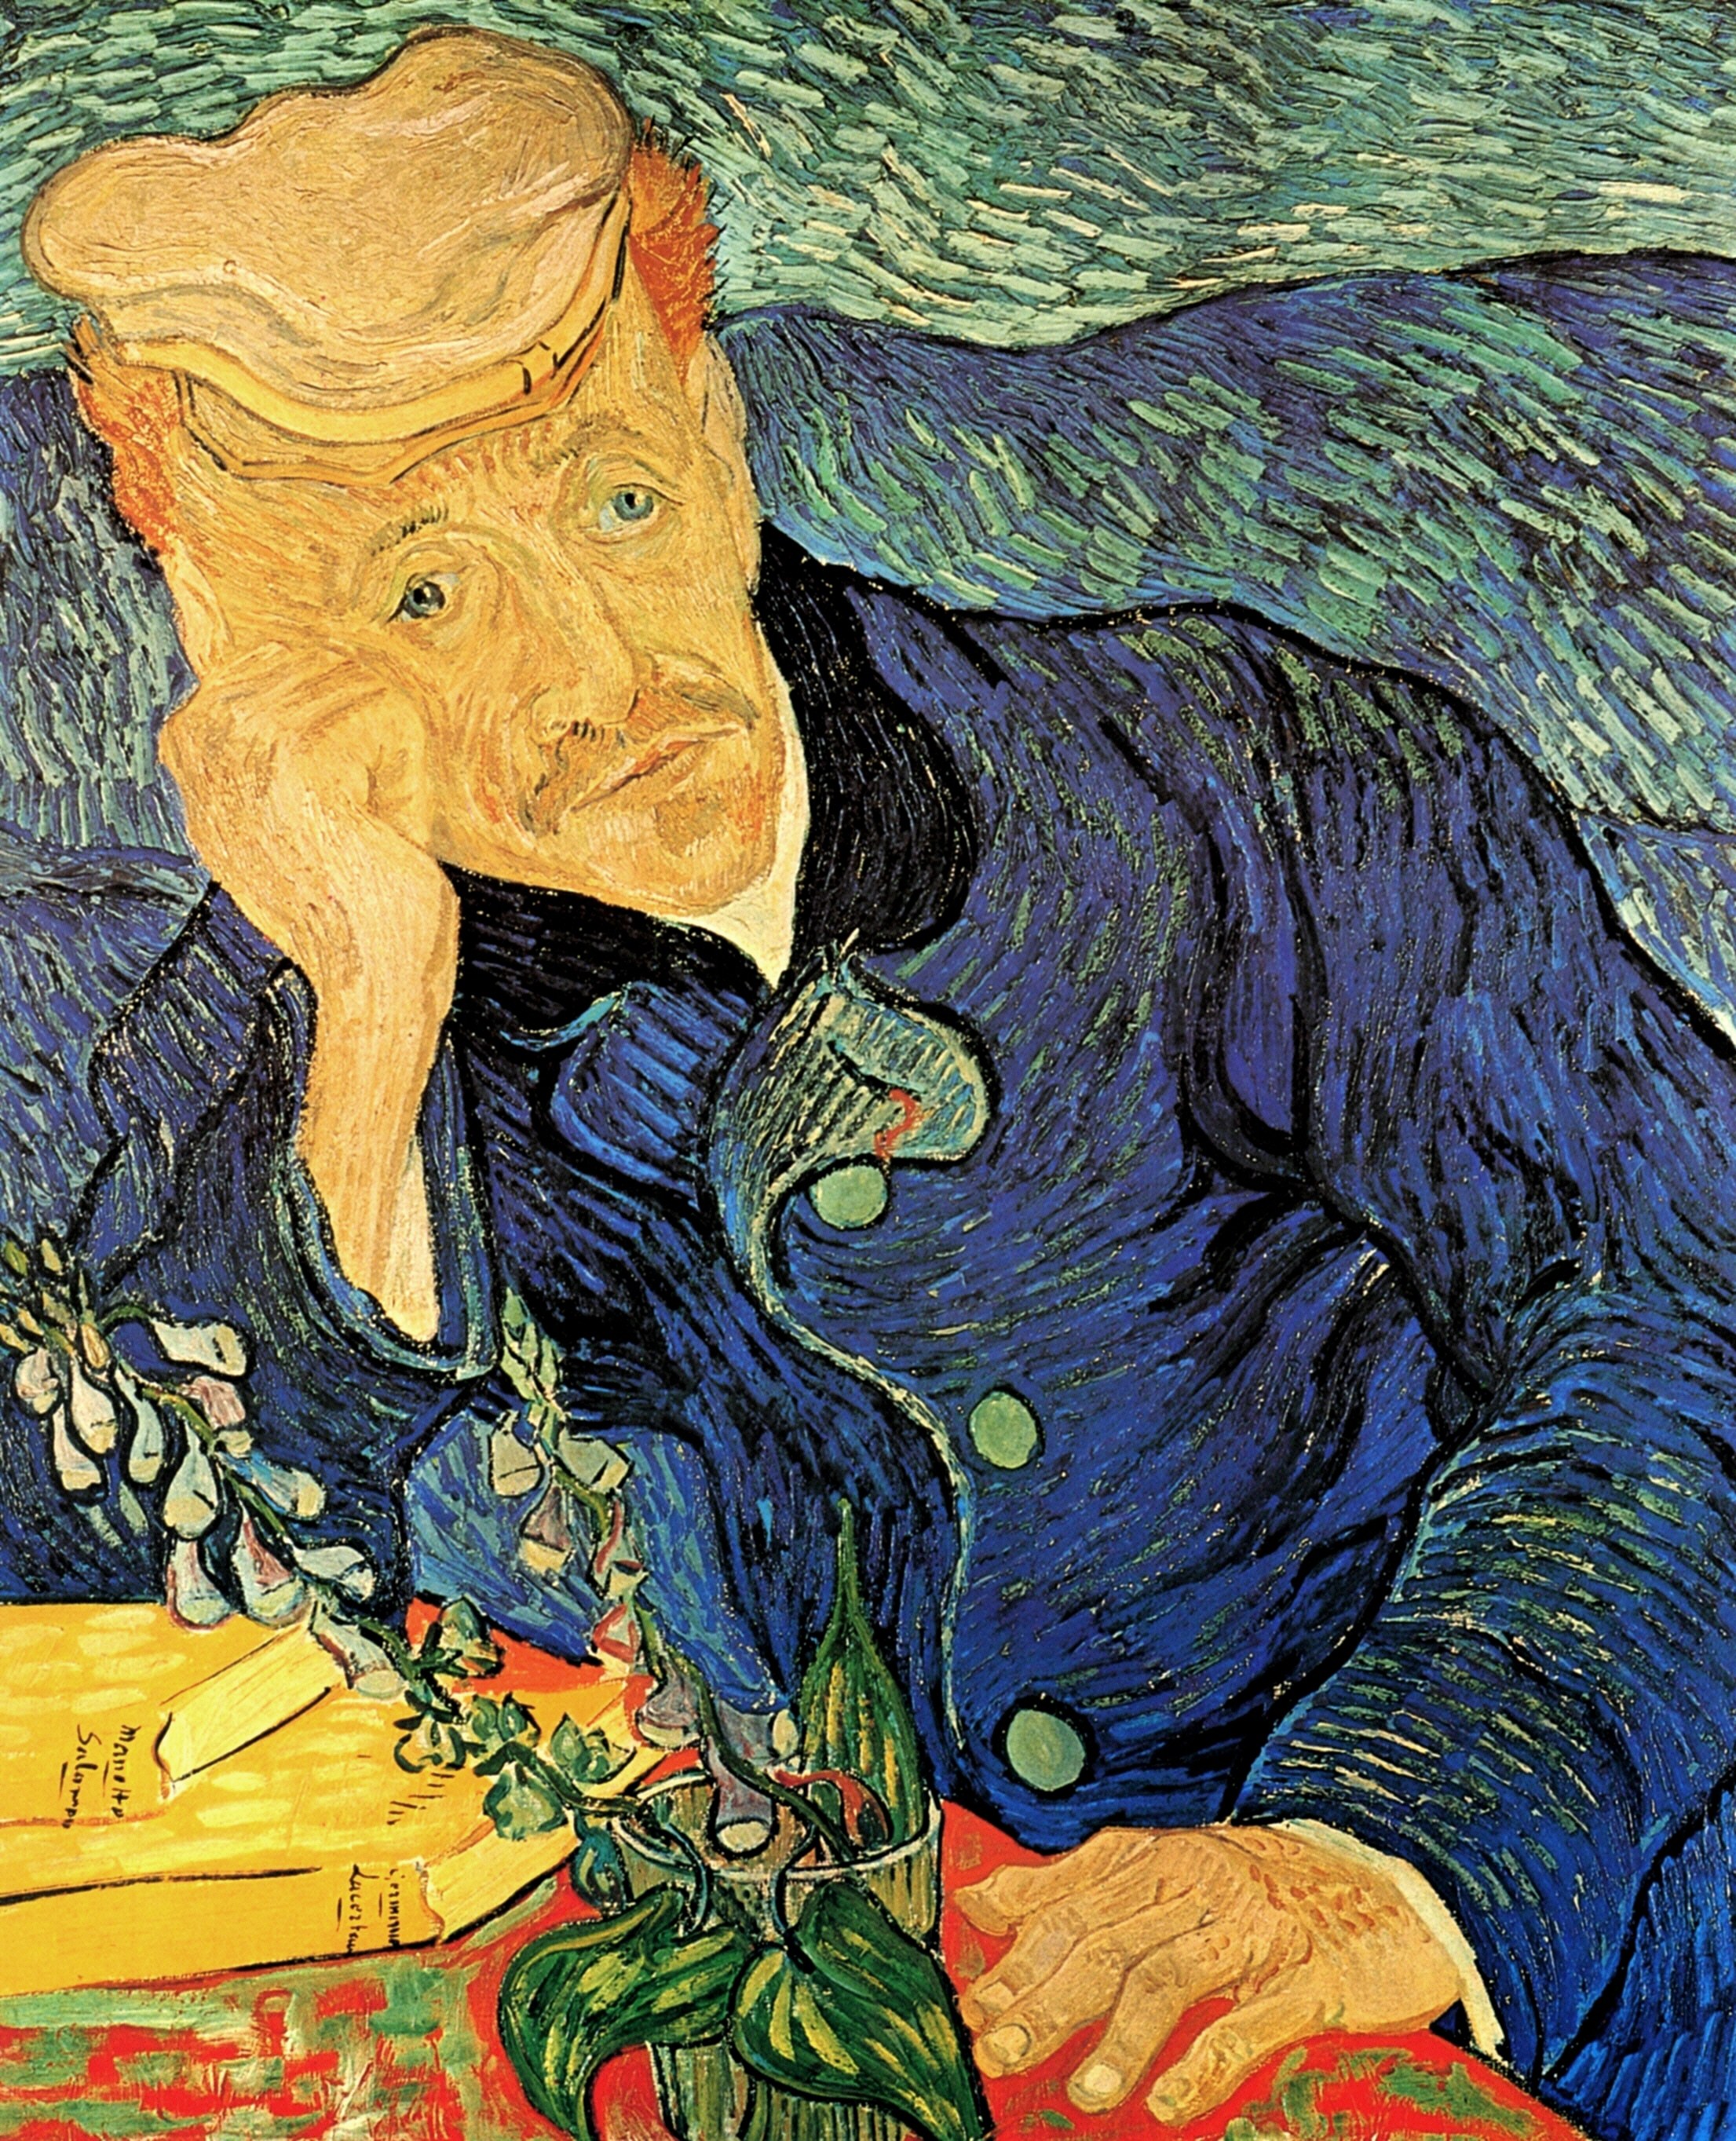 Portrait of Dr. Gachet by Vincent van Gogh 134.6 Million